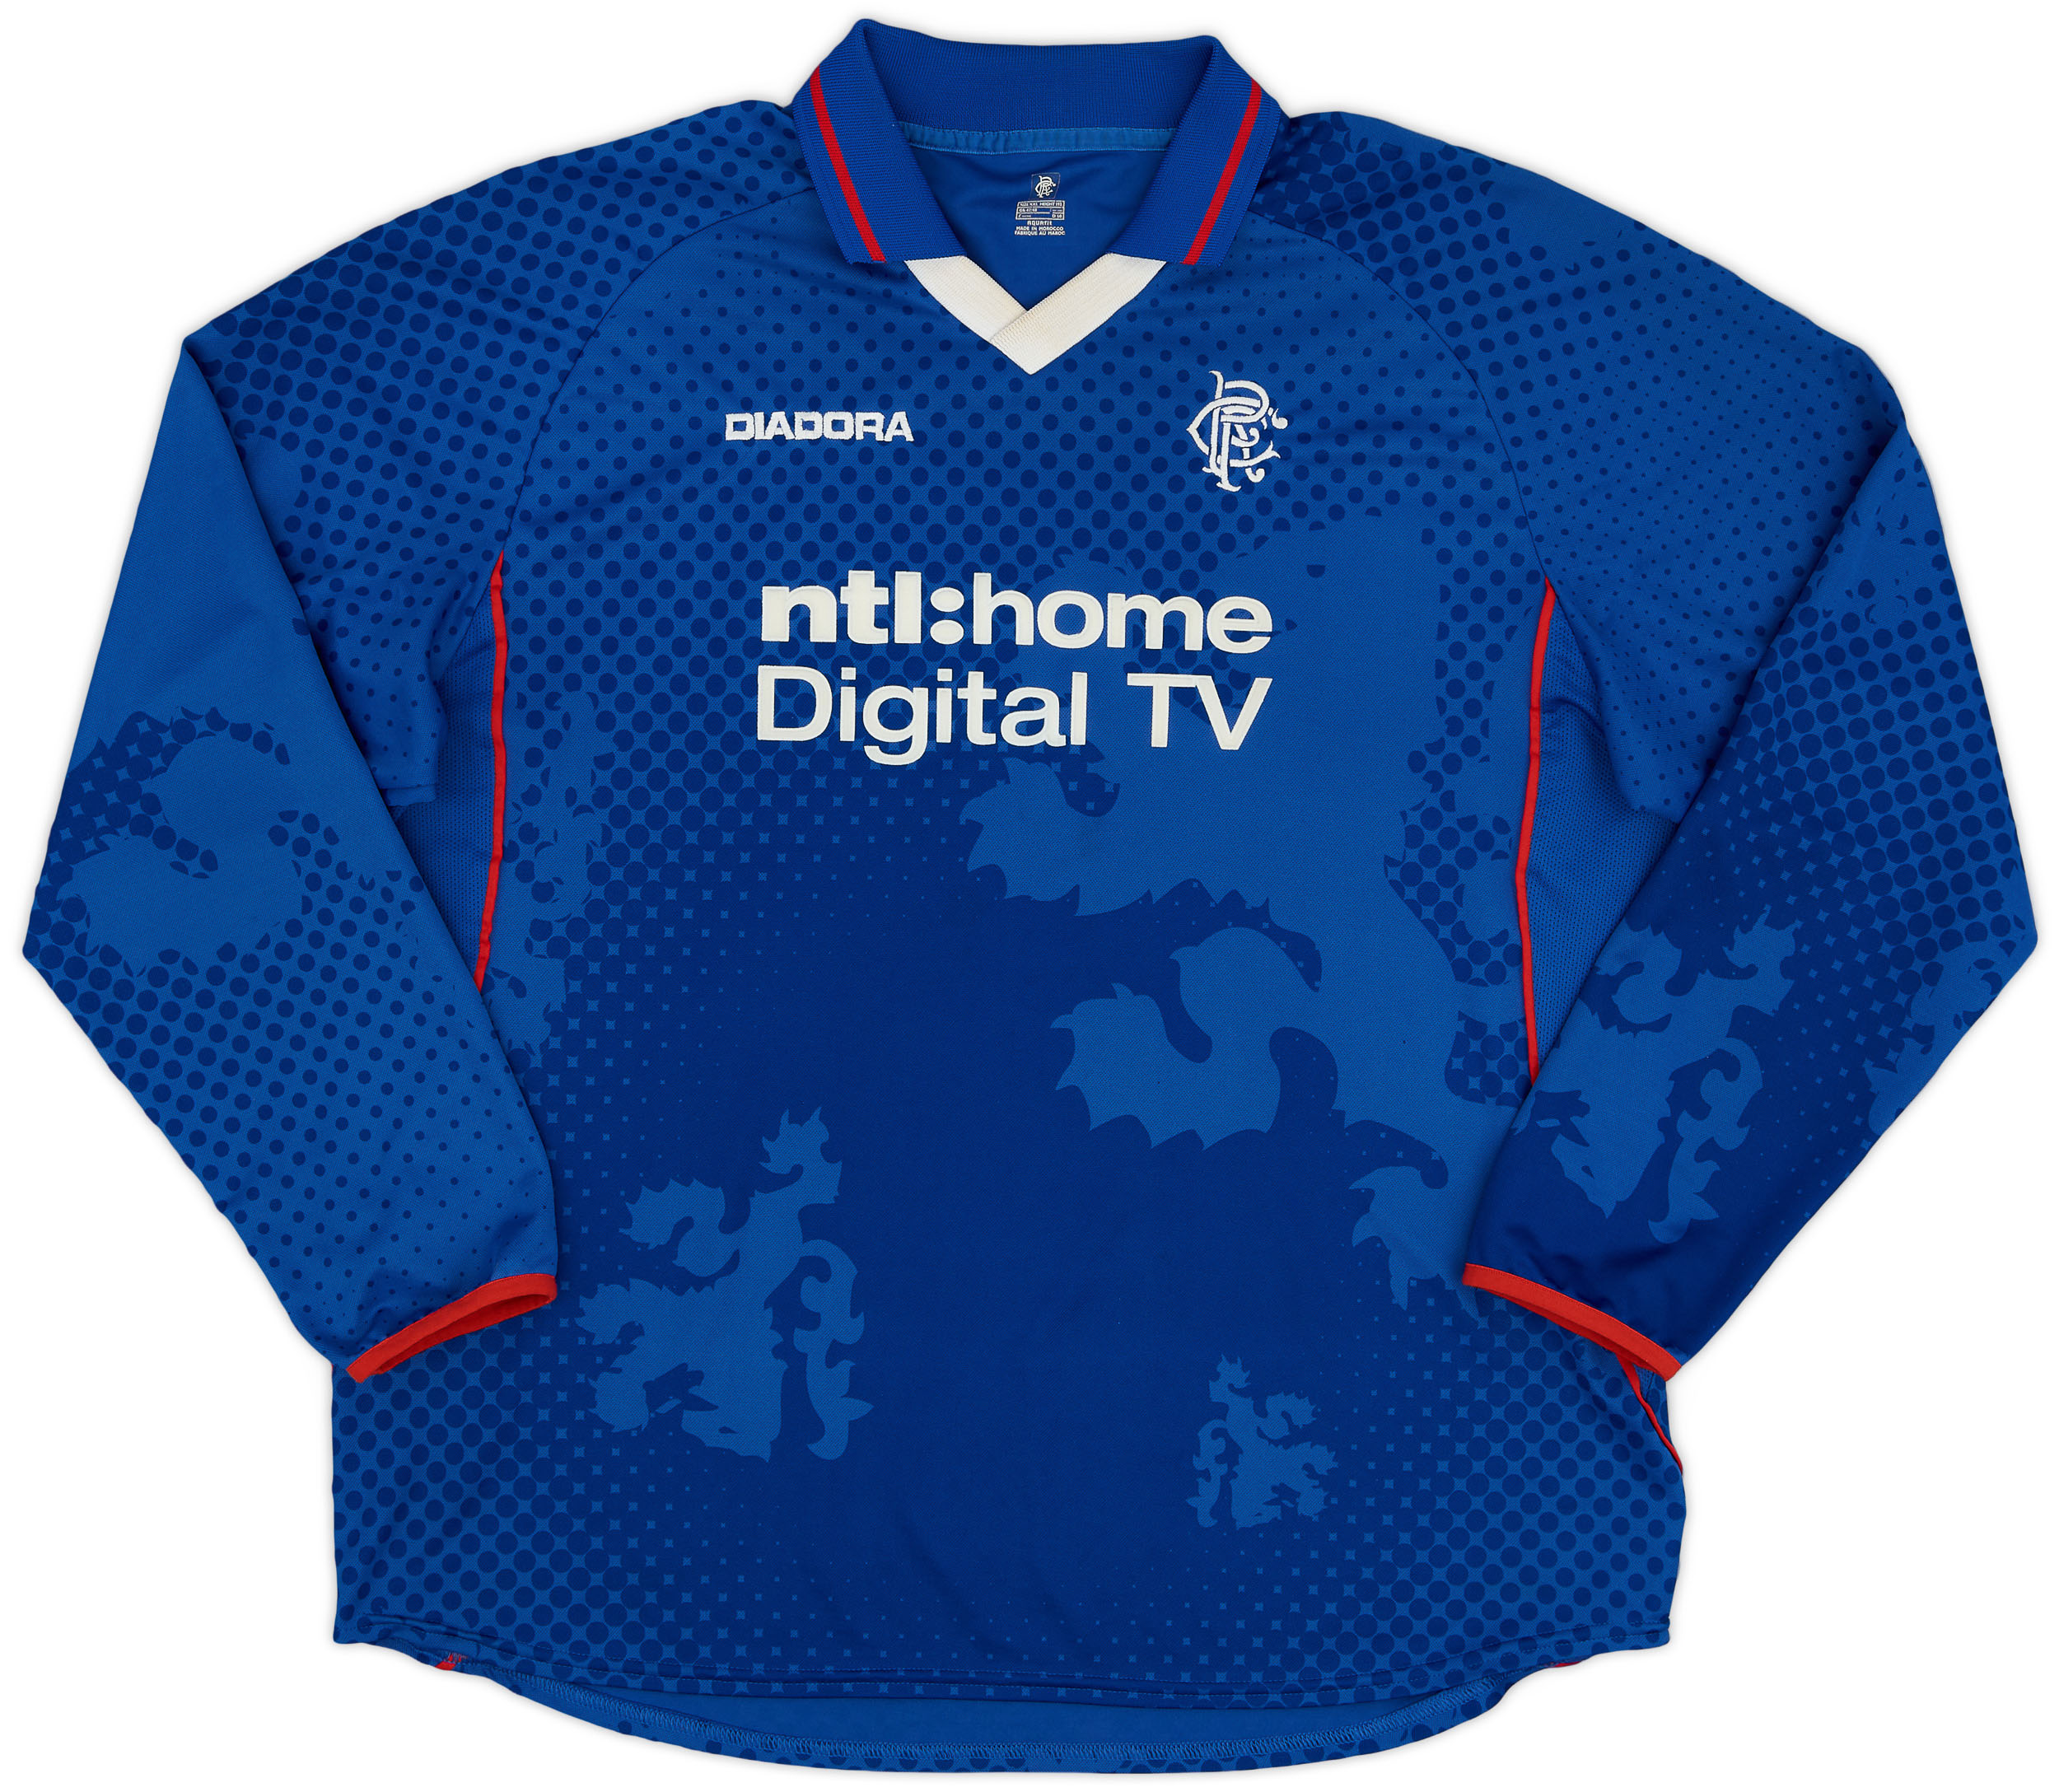 2002-03 Rangers Home Shirt - 9/10 - ()